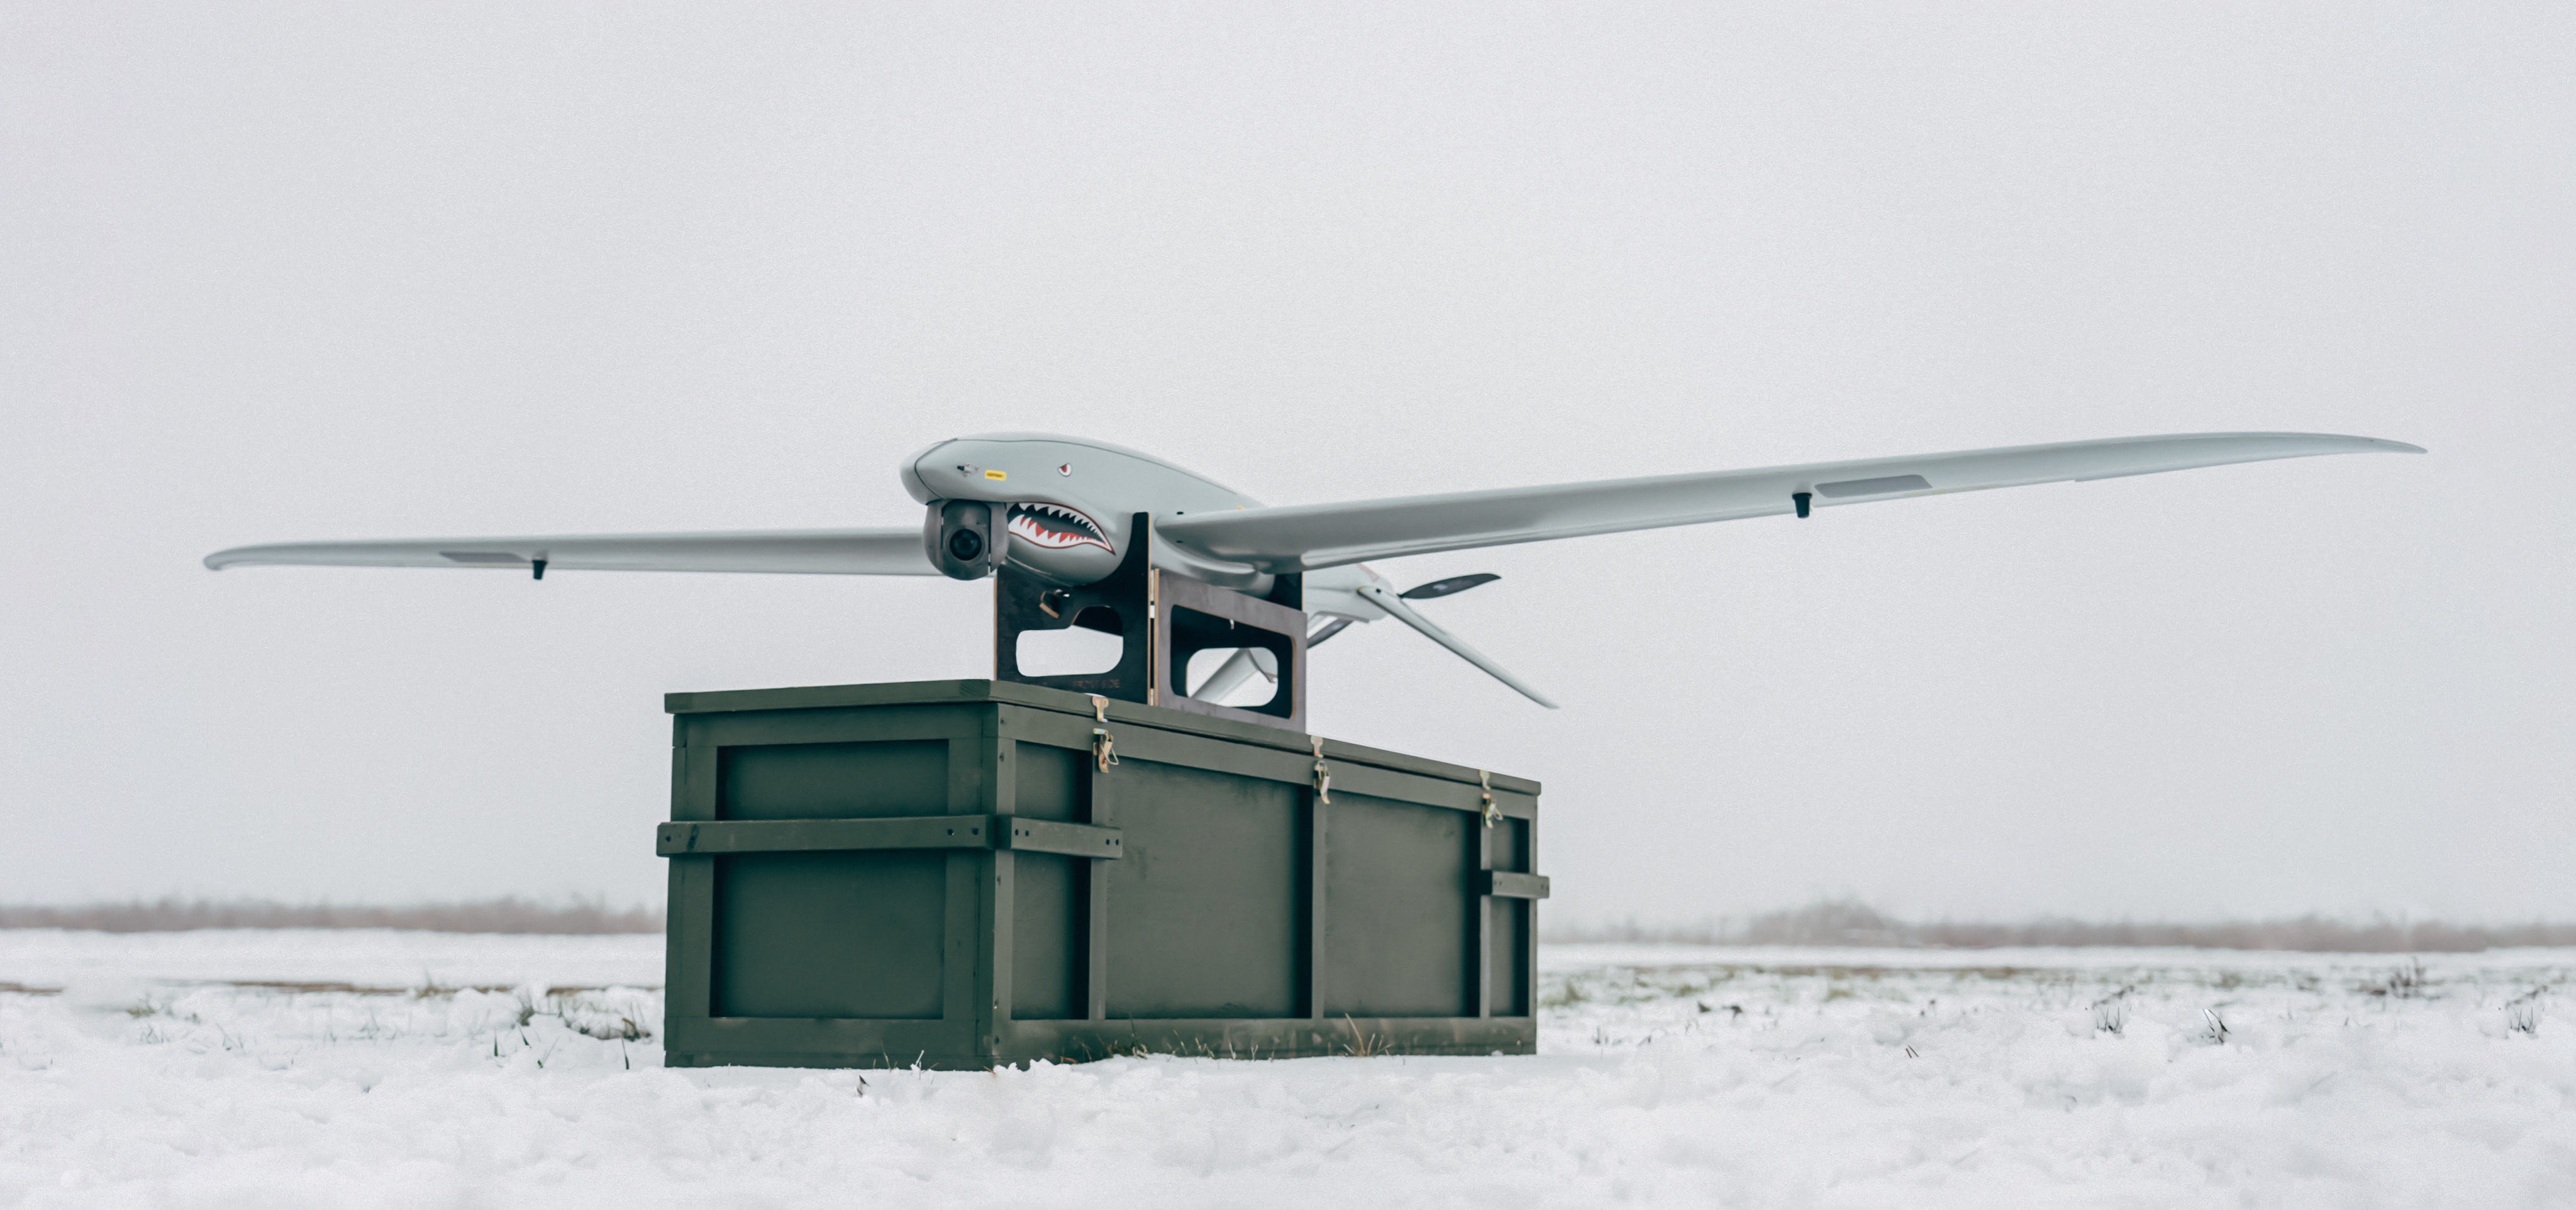 Ukrspecsystems ha aggiornato il drone da ricognizione ucraino SHARK, con ali più lunghe e una maggiore durata della batteria